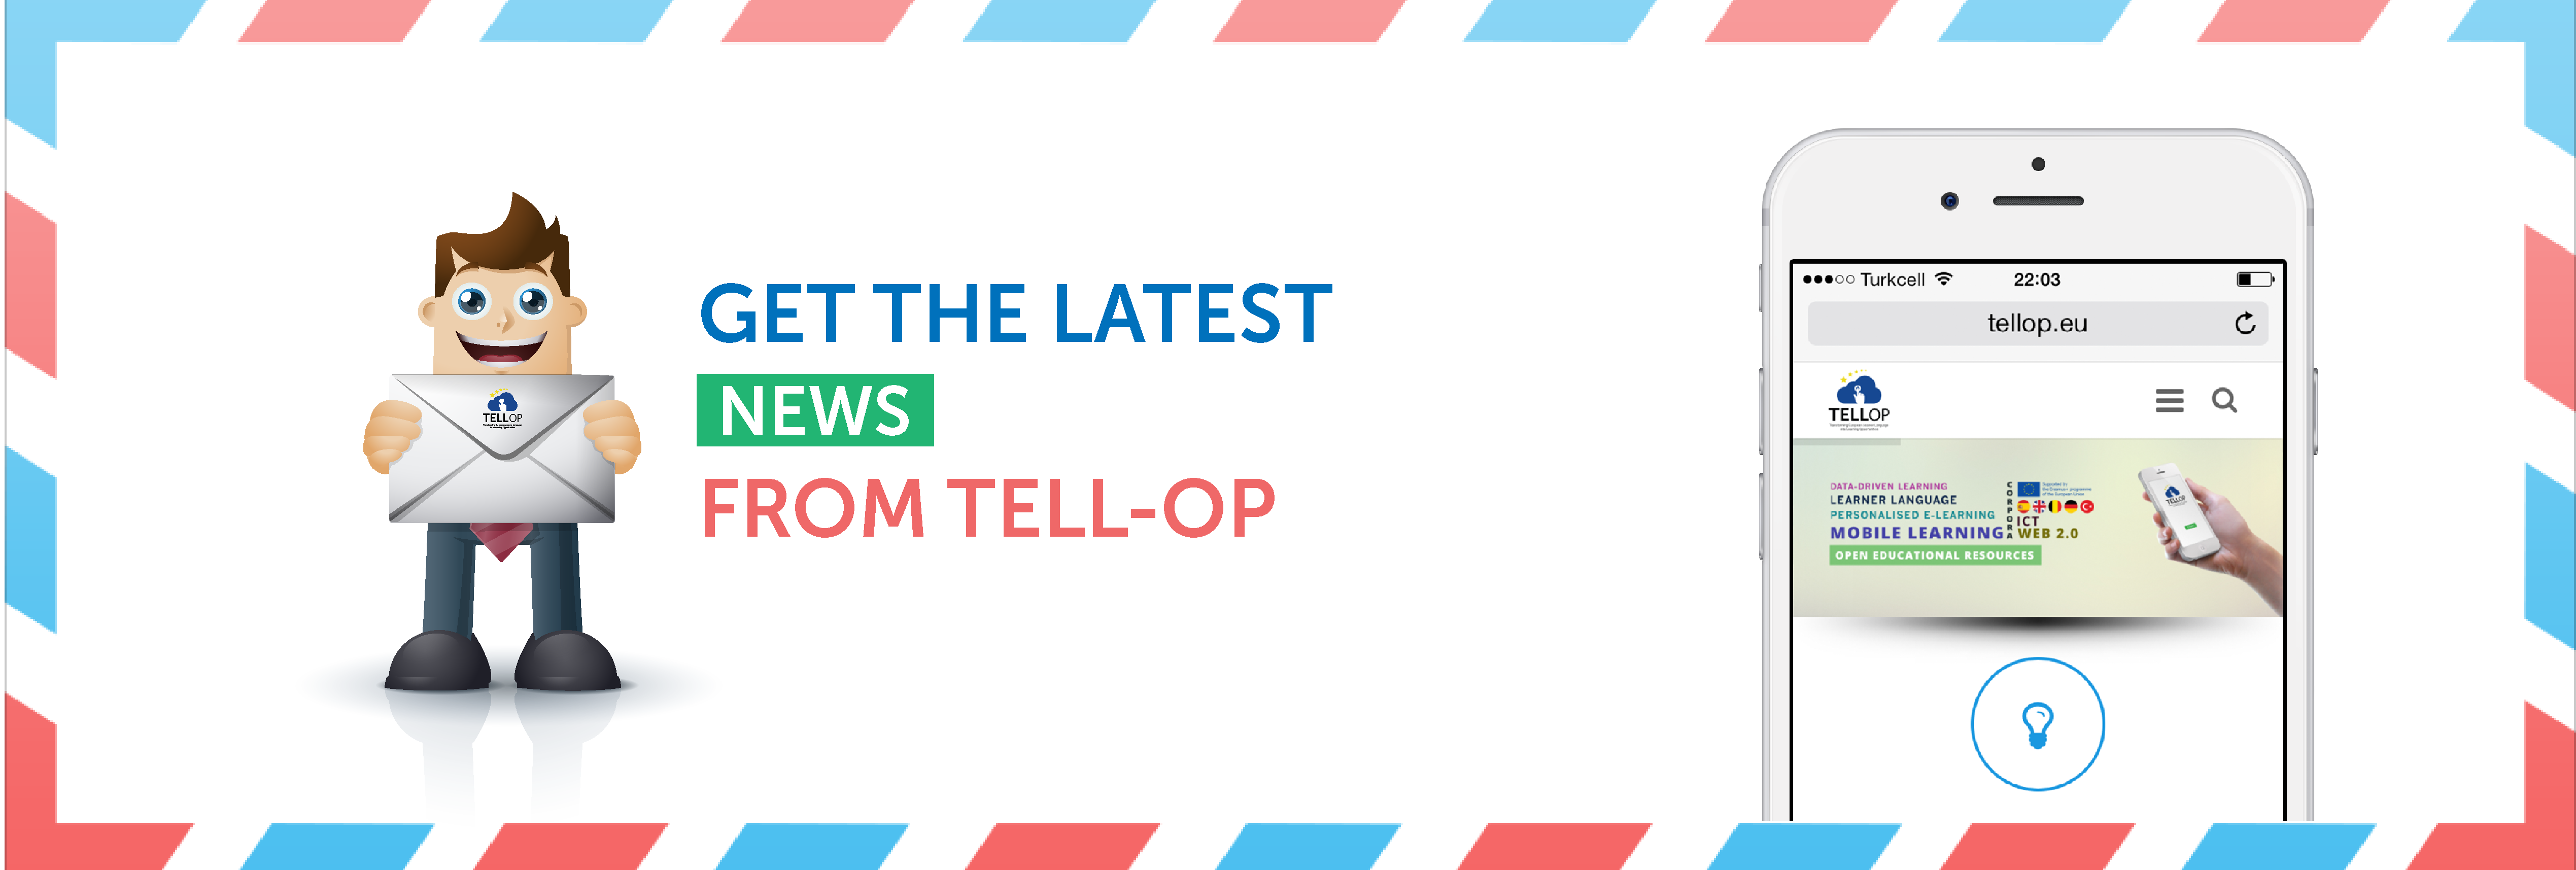 tellop-newsletter-01